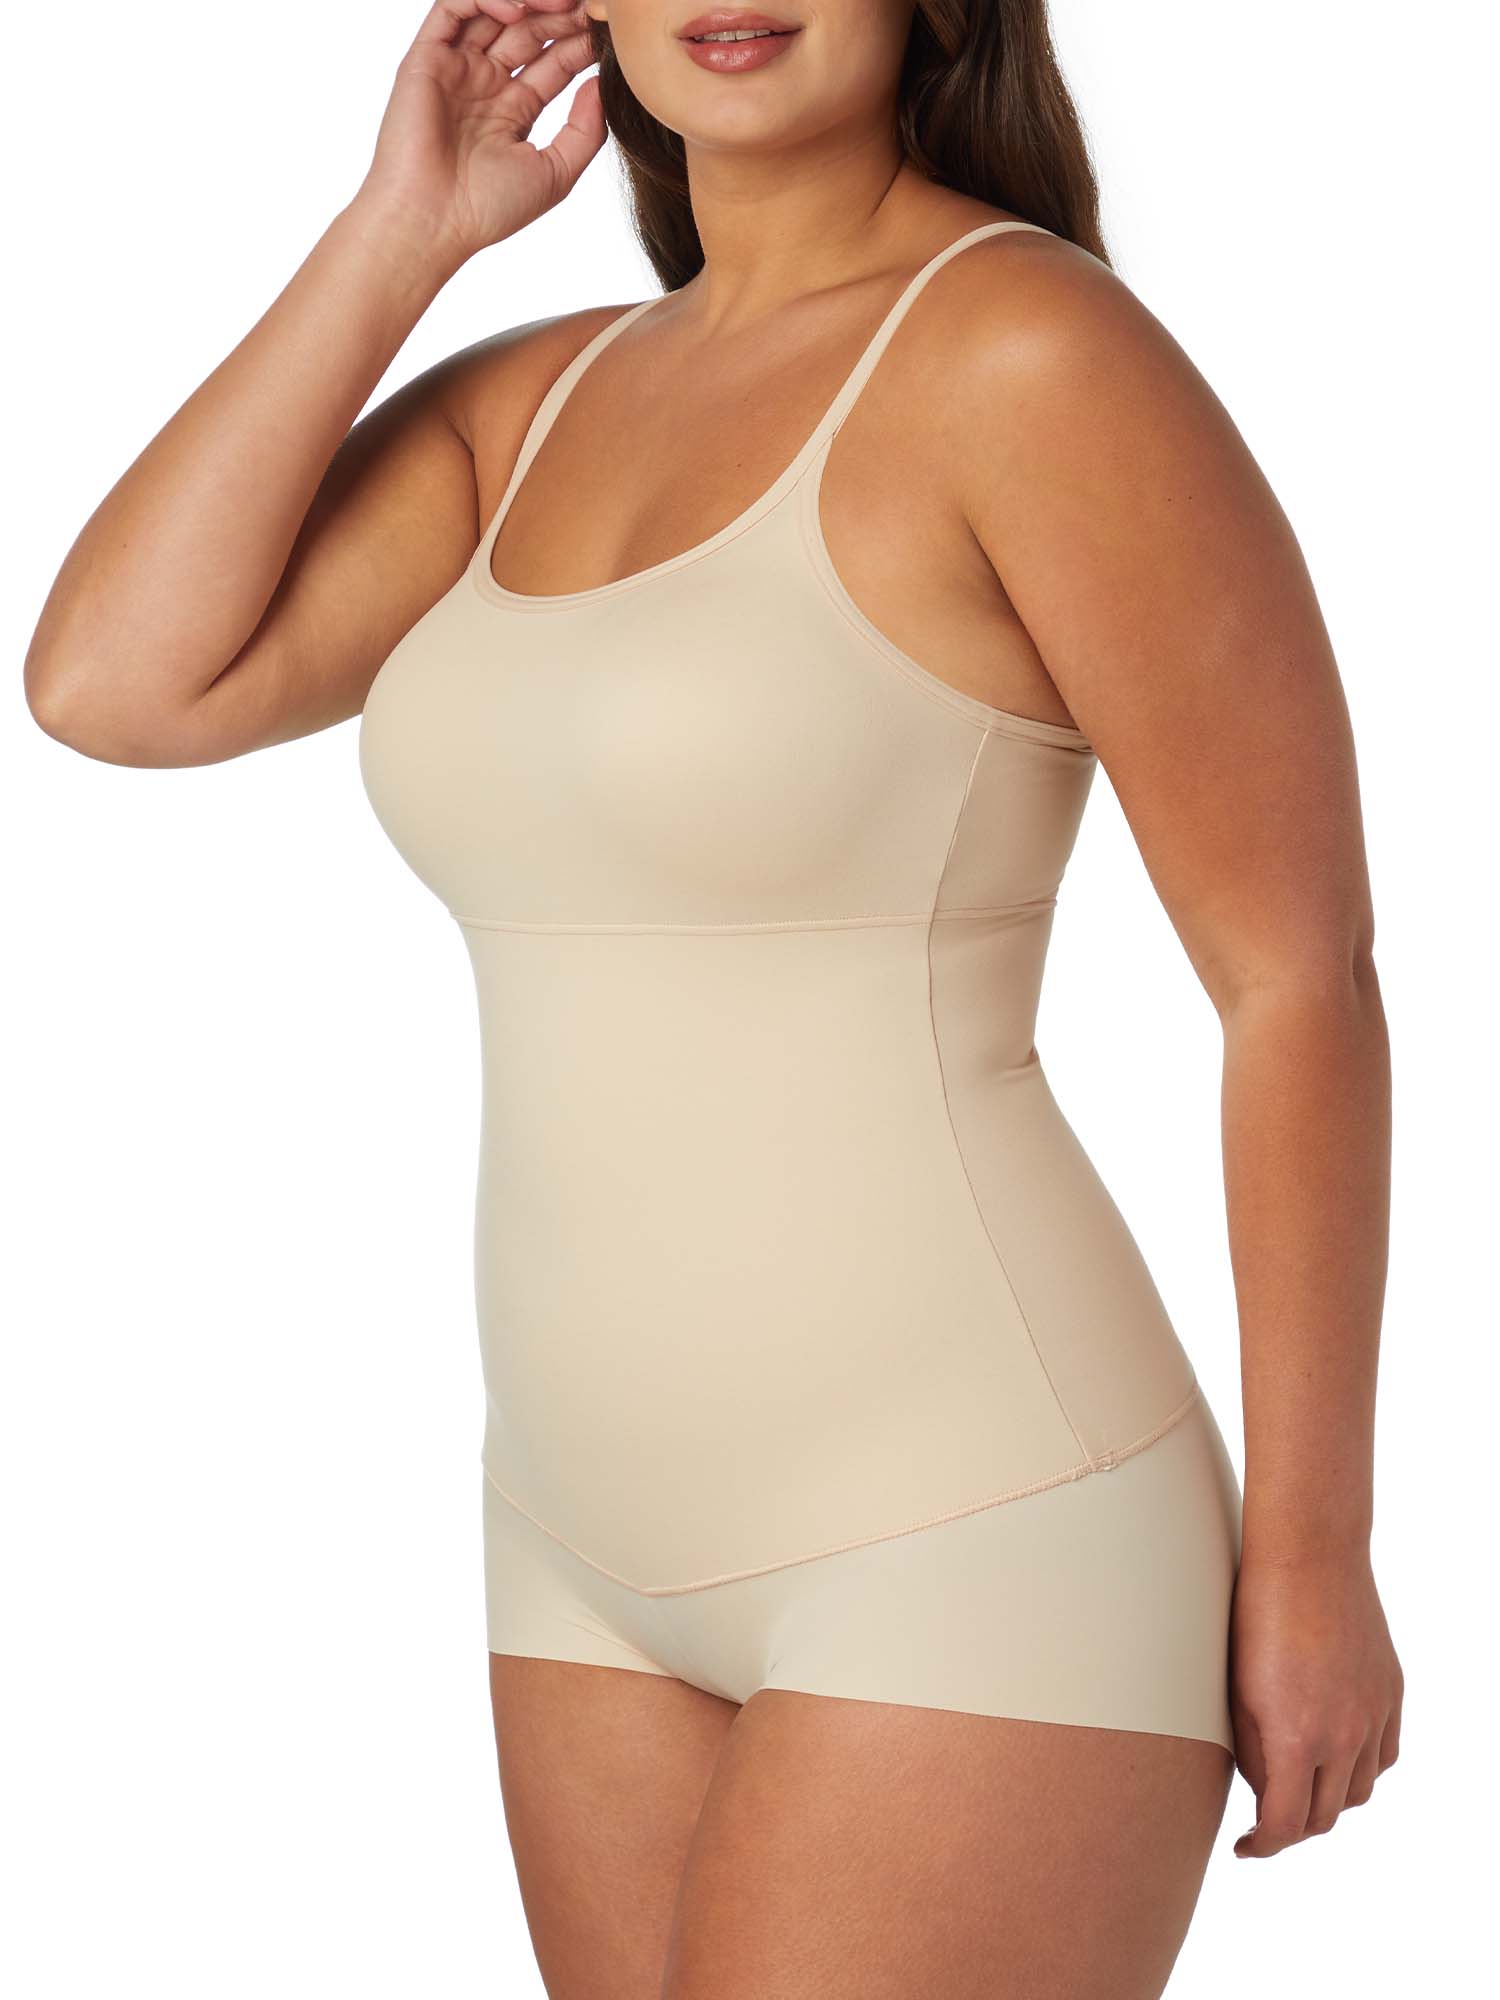 Flexees Women's Maidenform Cool Comfort Firm Romper W83055 - image 2 of 11